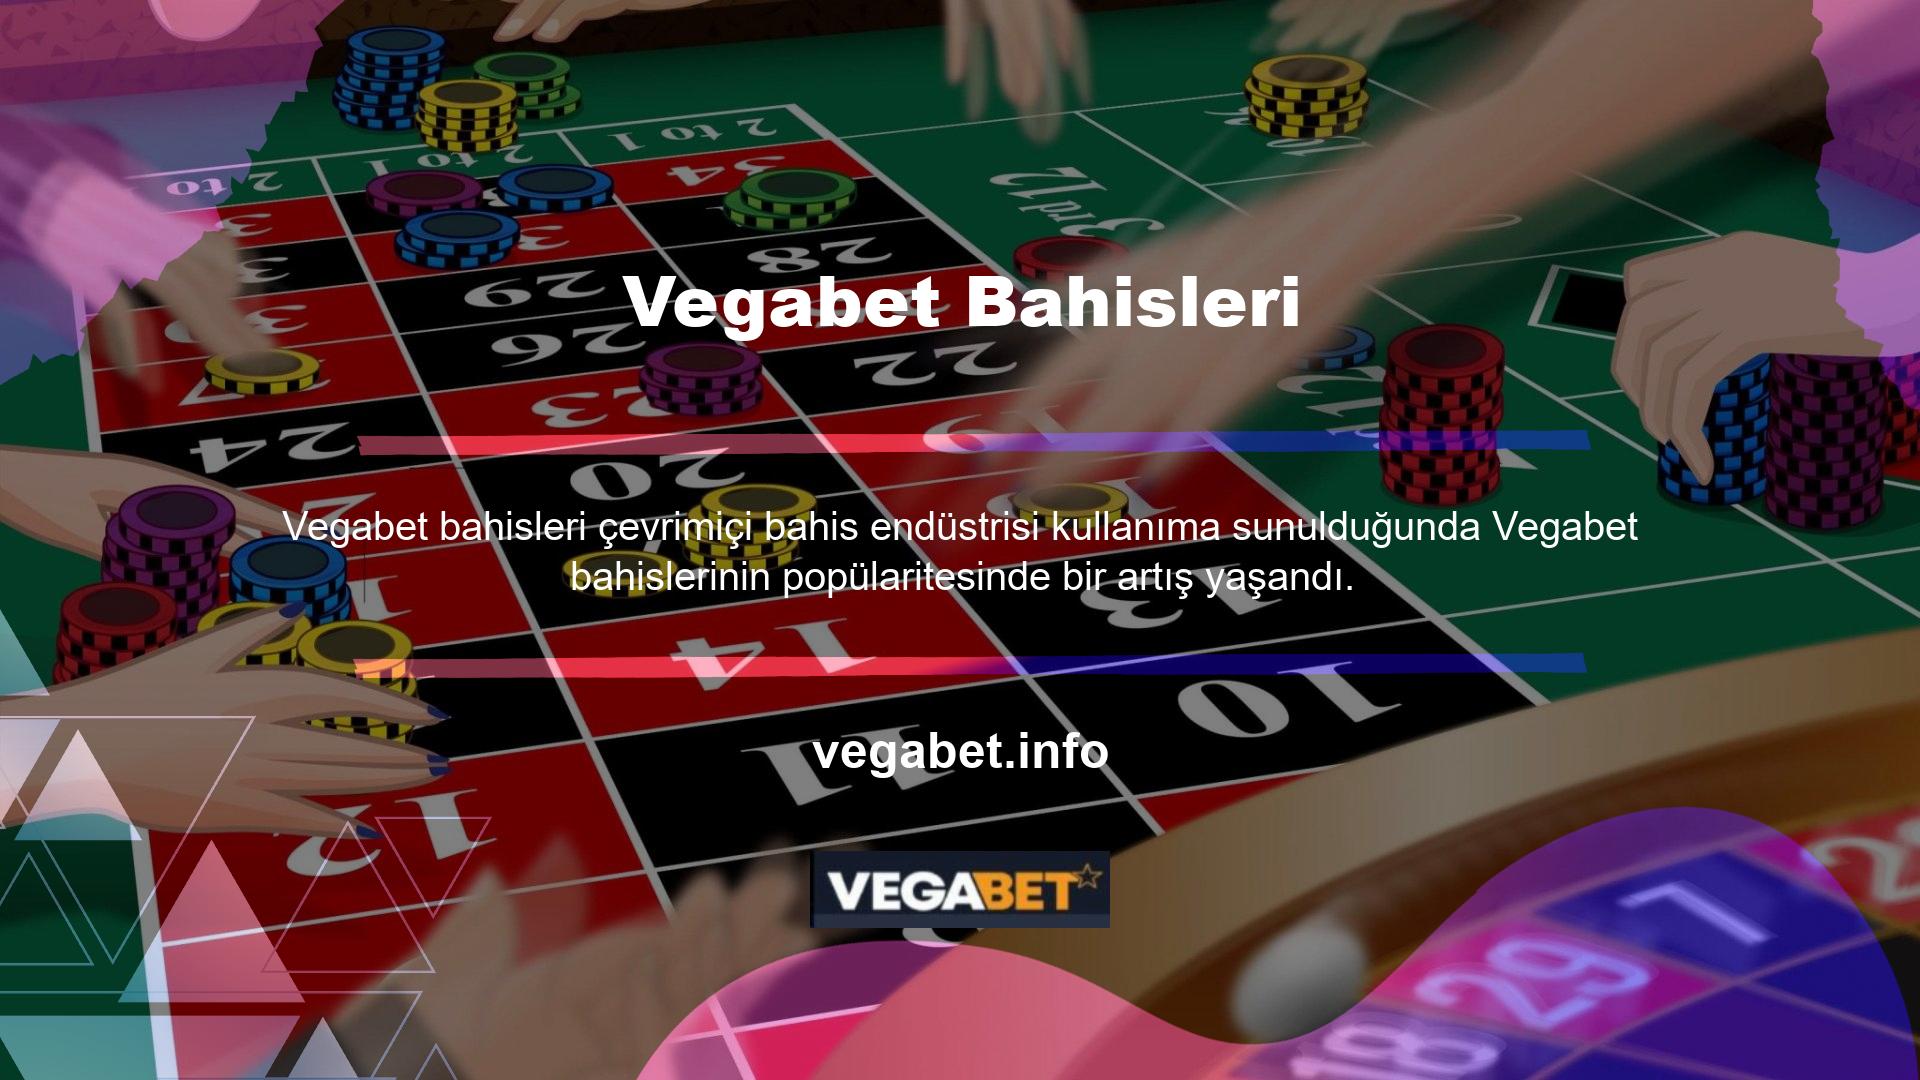 Vegabet bahis siteleri mevcut en güvenilir ve profesyonel çevrimiçi bahis platformları arasındadır